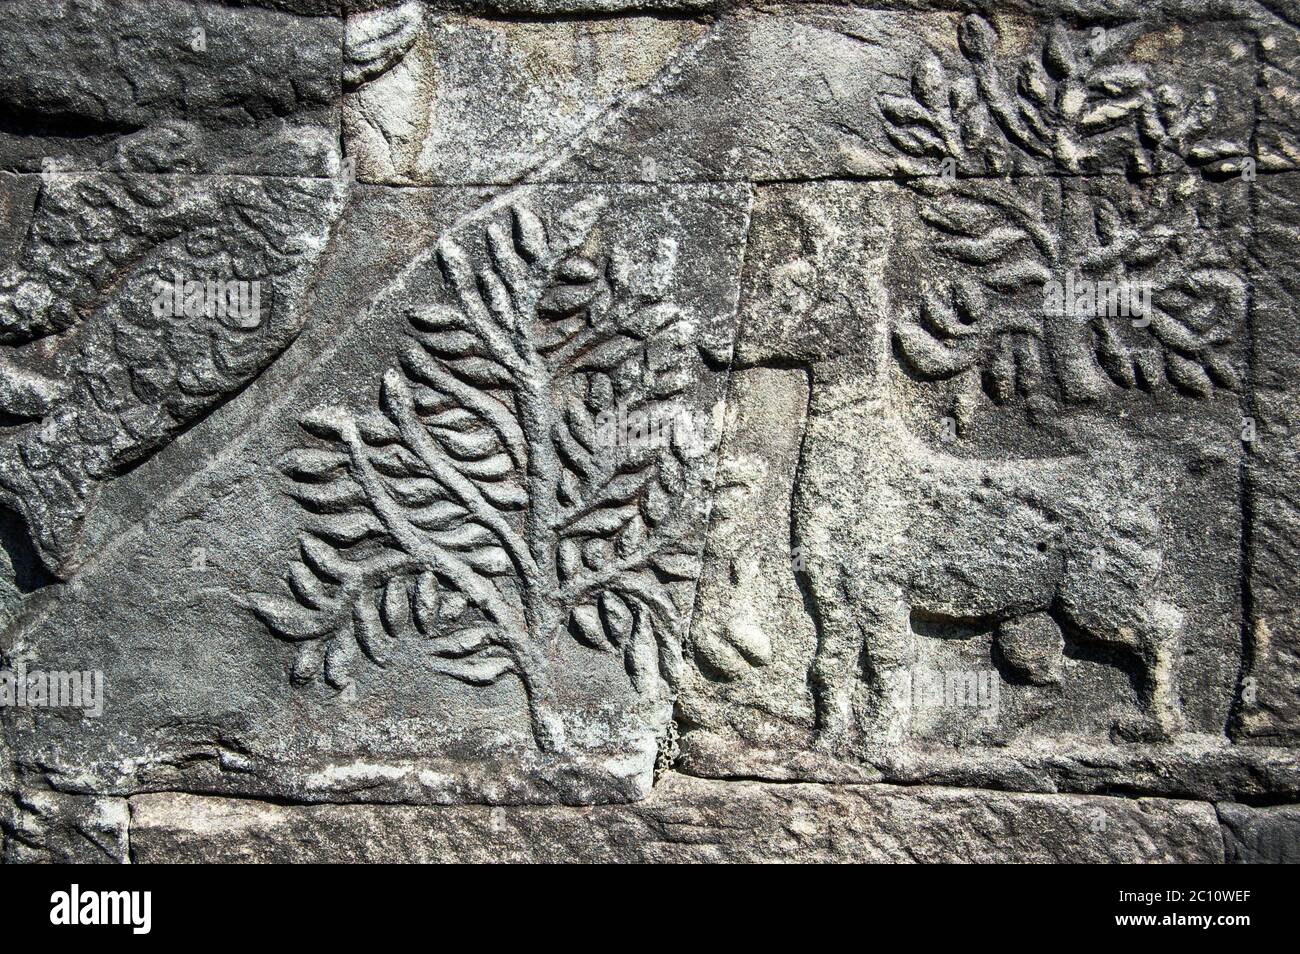 Antica scultura Khmer di un cervo nei boschi. Muro del tempio di Bayon, Angkor Thom, Siem Reap, Cambogia. Foto Stock